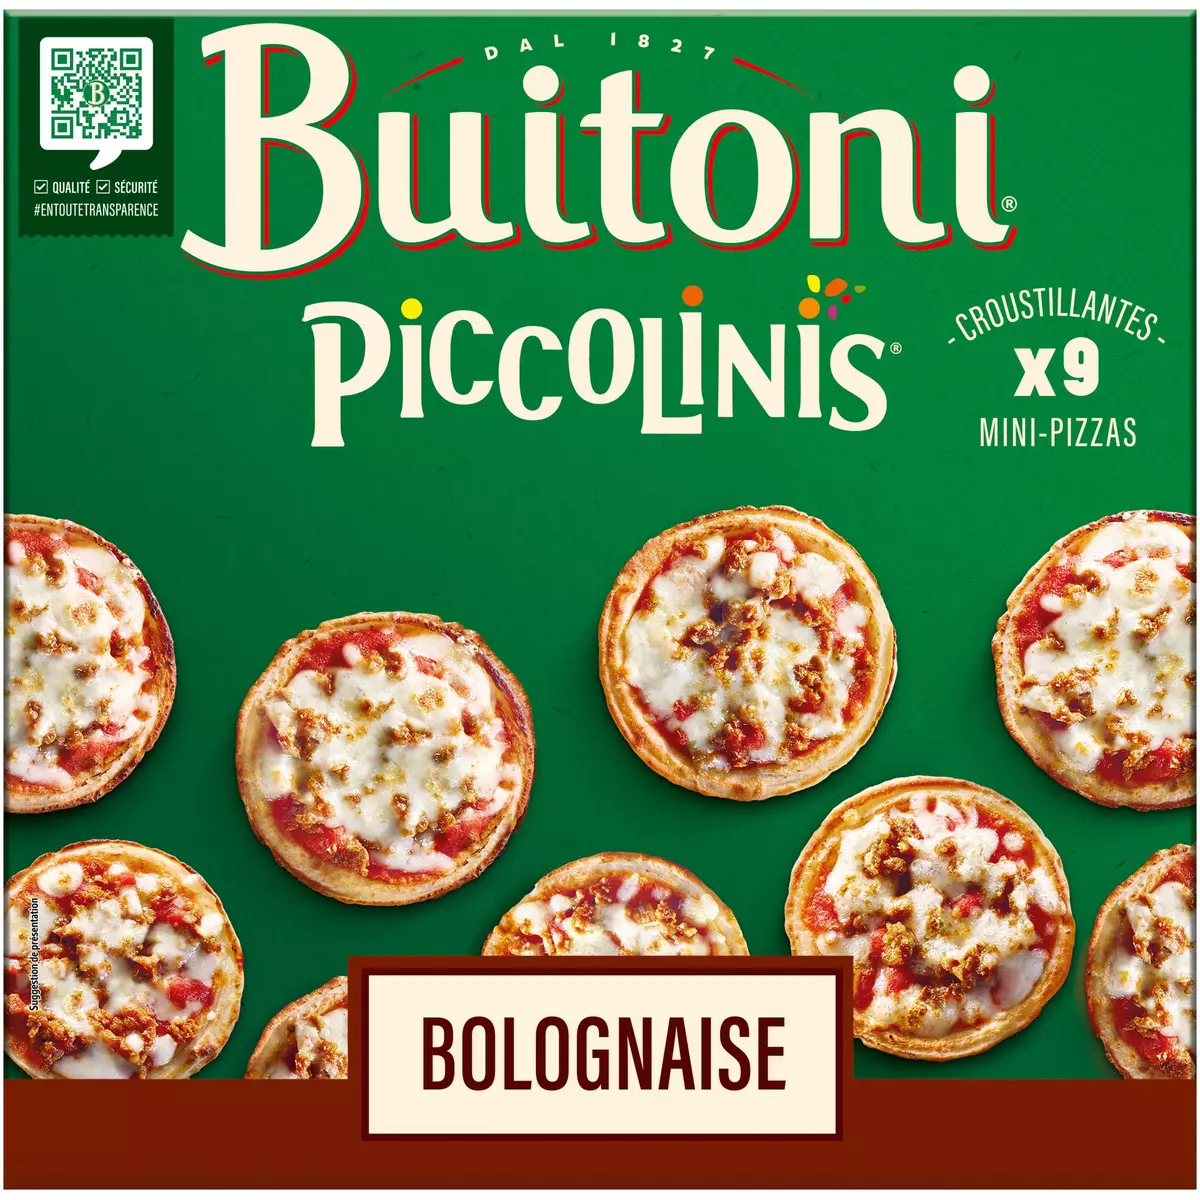 BUITONI Piccolinis bolognaise 9 pièces 270g